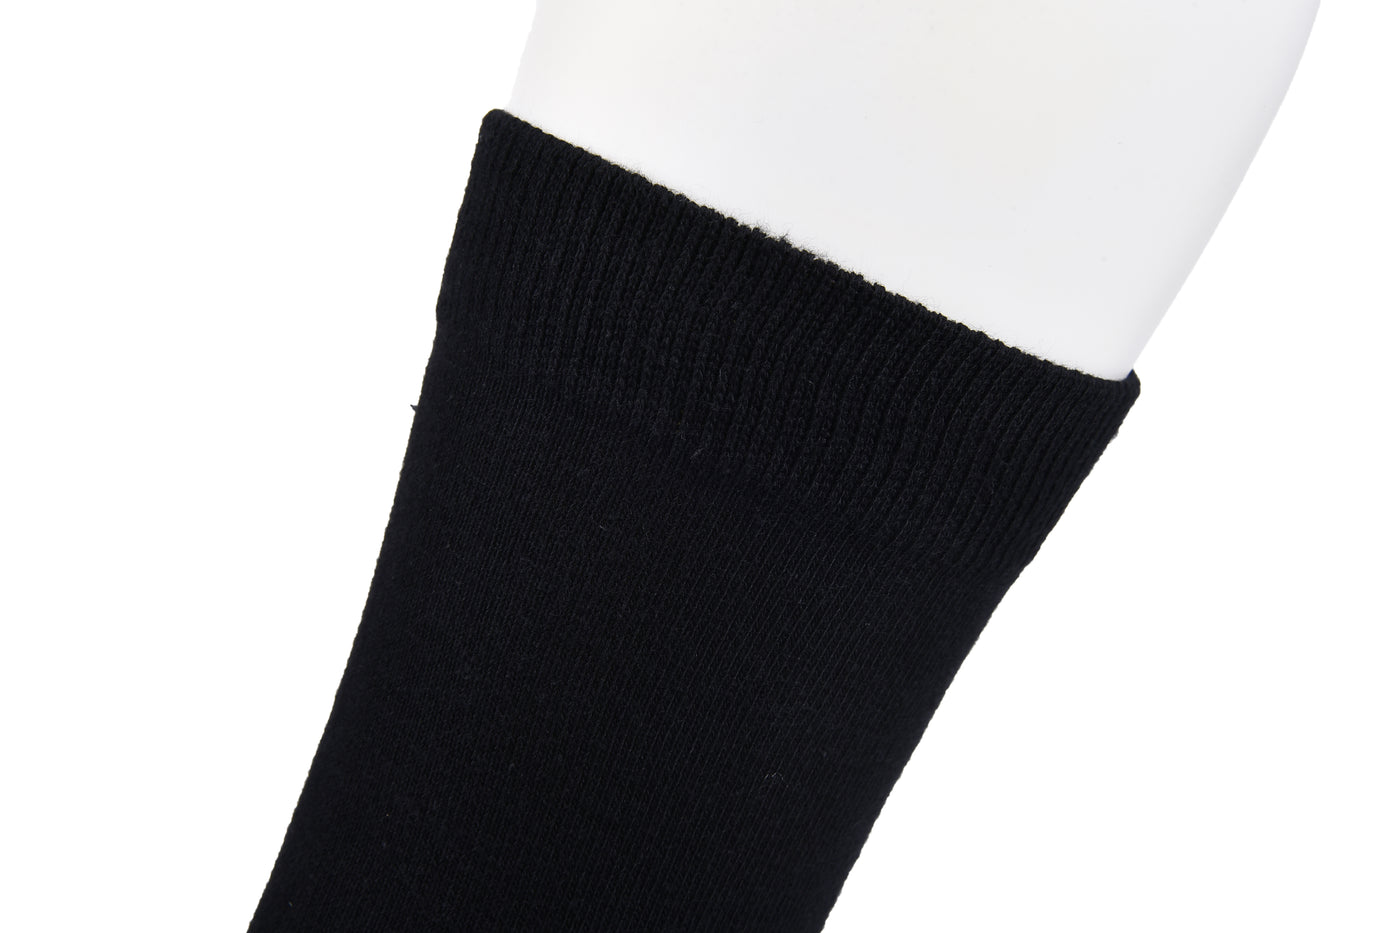 Laulax 5 pares de calcetines escolares para niños, de algodón peinado, lisos y sin costuras